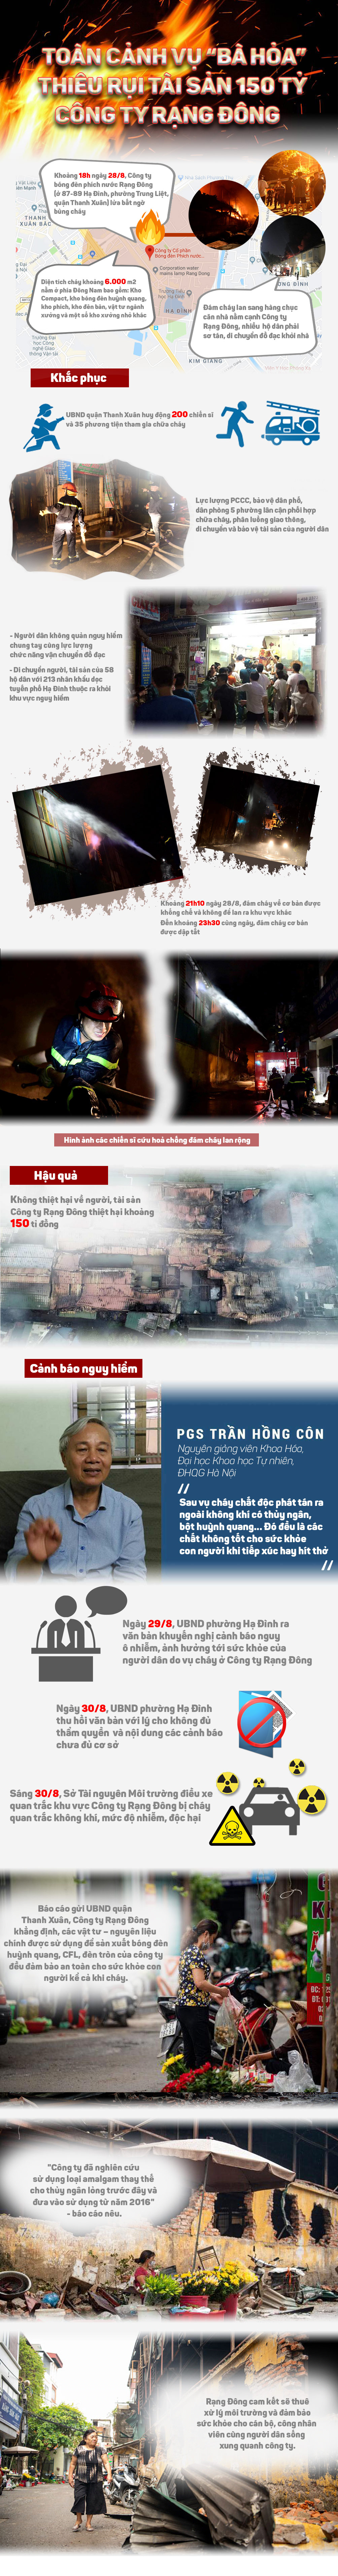 Infographic: Toàn cảnh vụ cháy gây thiệt hại 150 tỷ tại Công ty Rạng Đông - 1